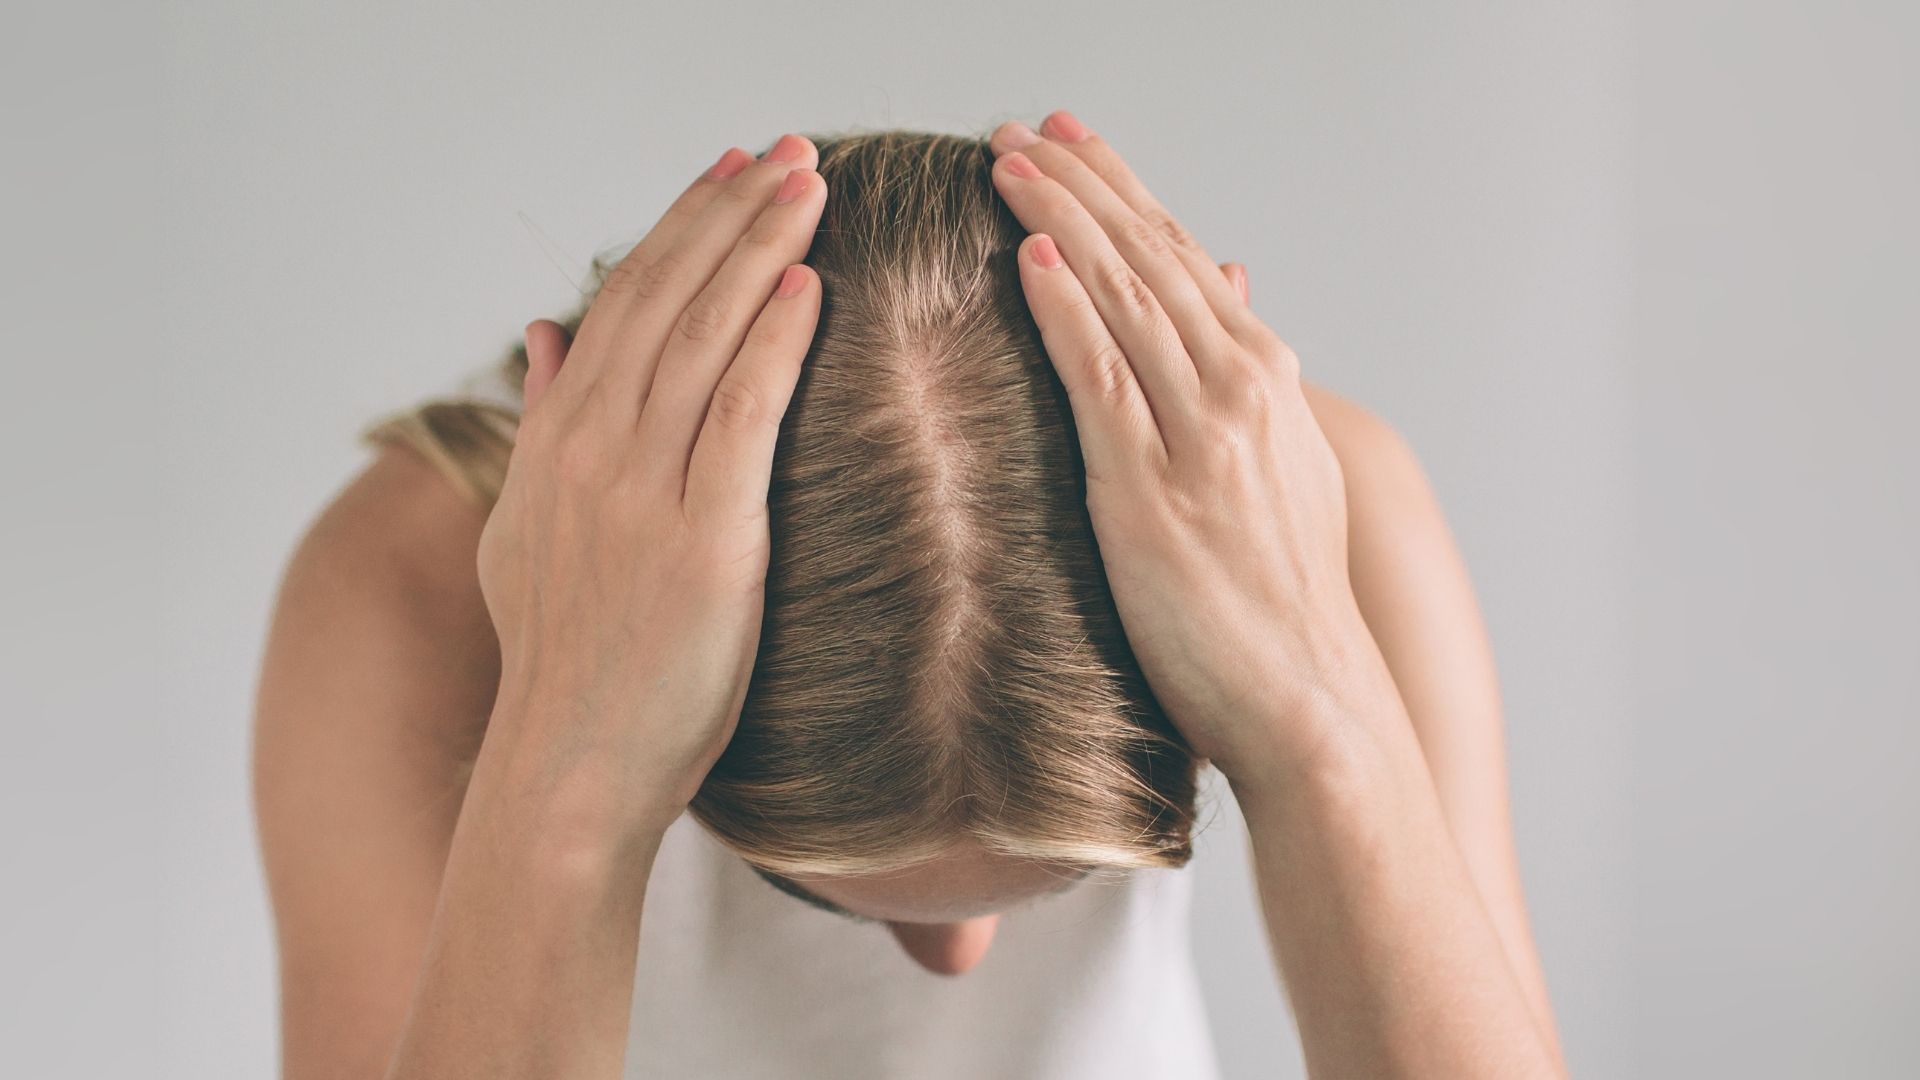 Caduta di capelli: quando preoccuparsi e rimedi